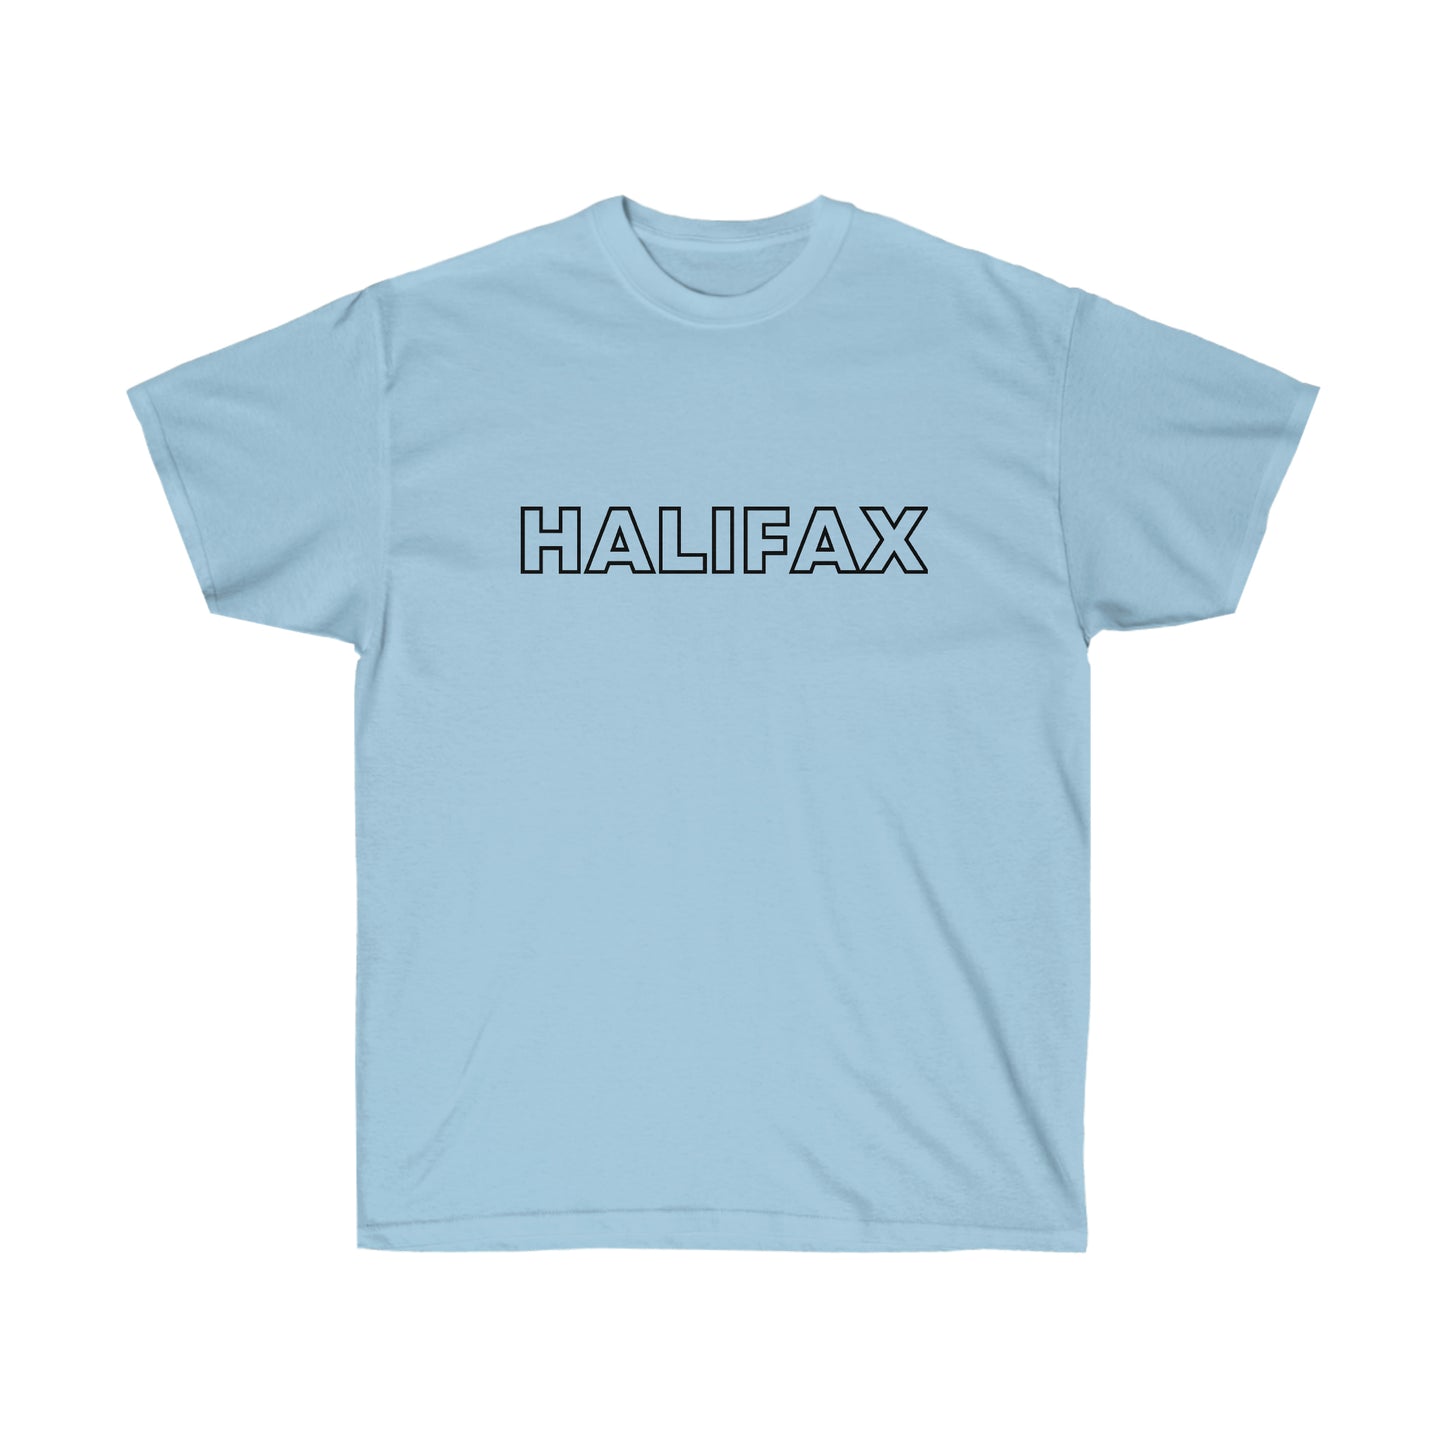 HALIFAX - Unisex Ultra Cotton Tee